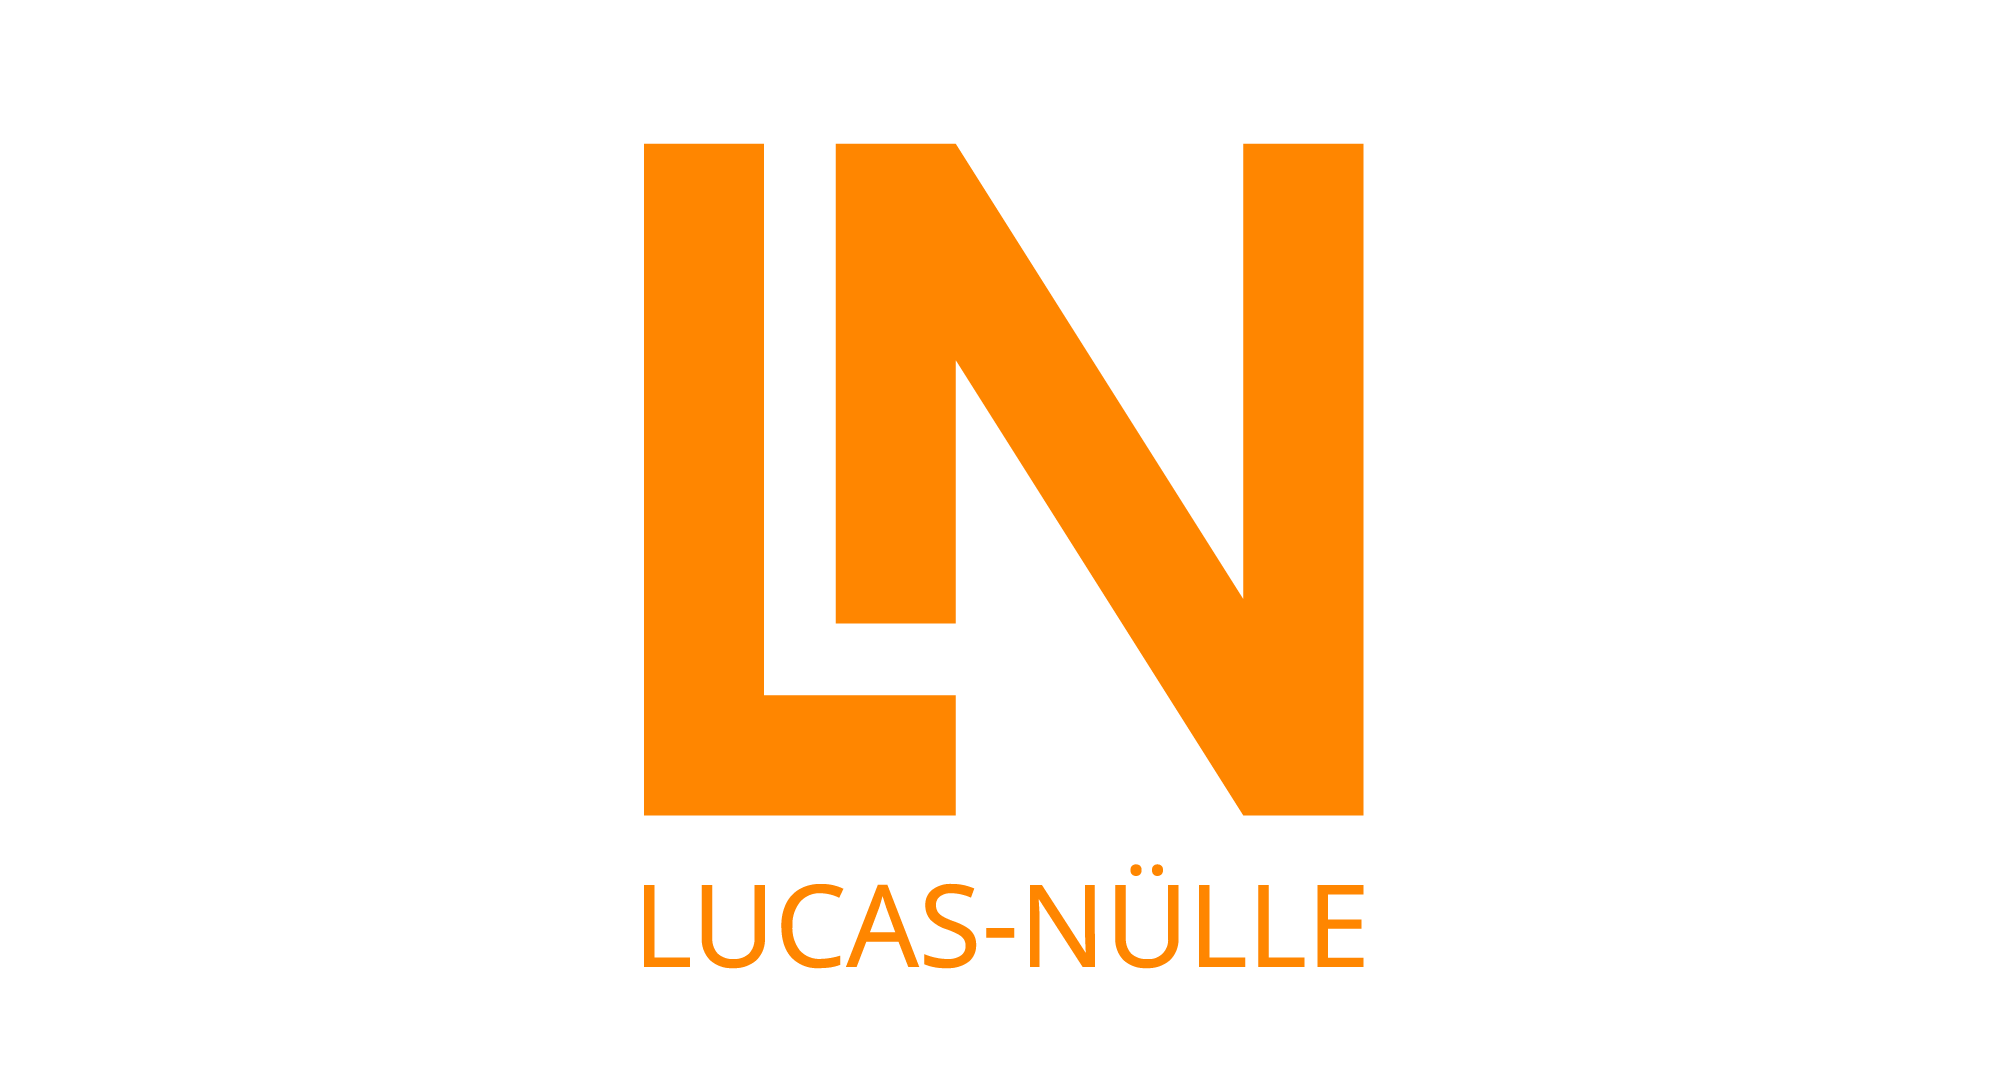 Lucas-nuelle